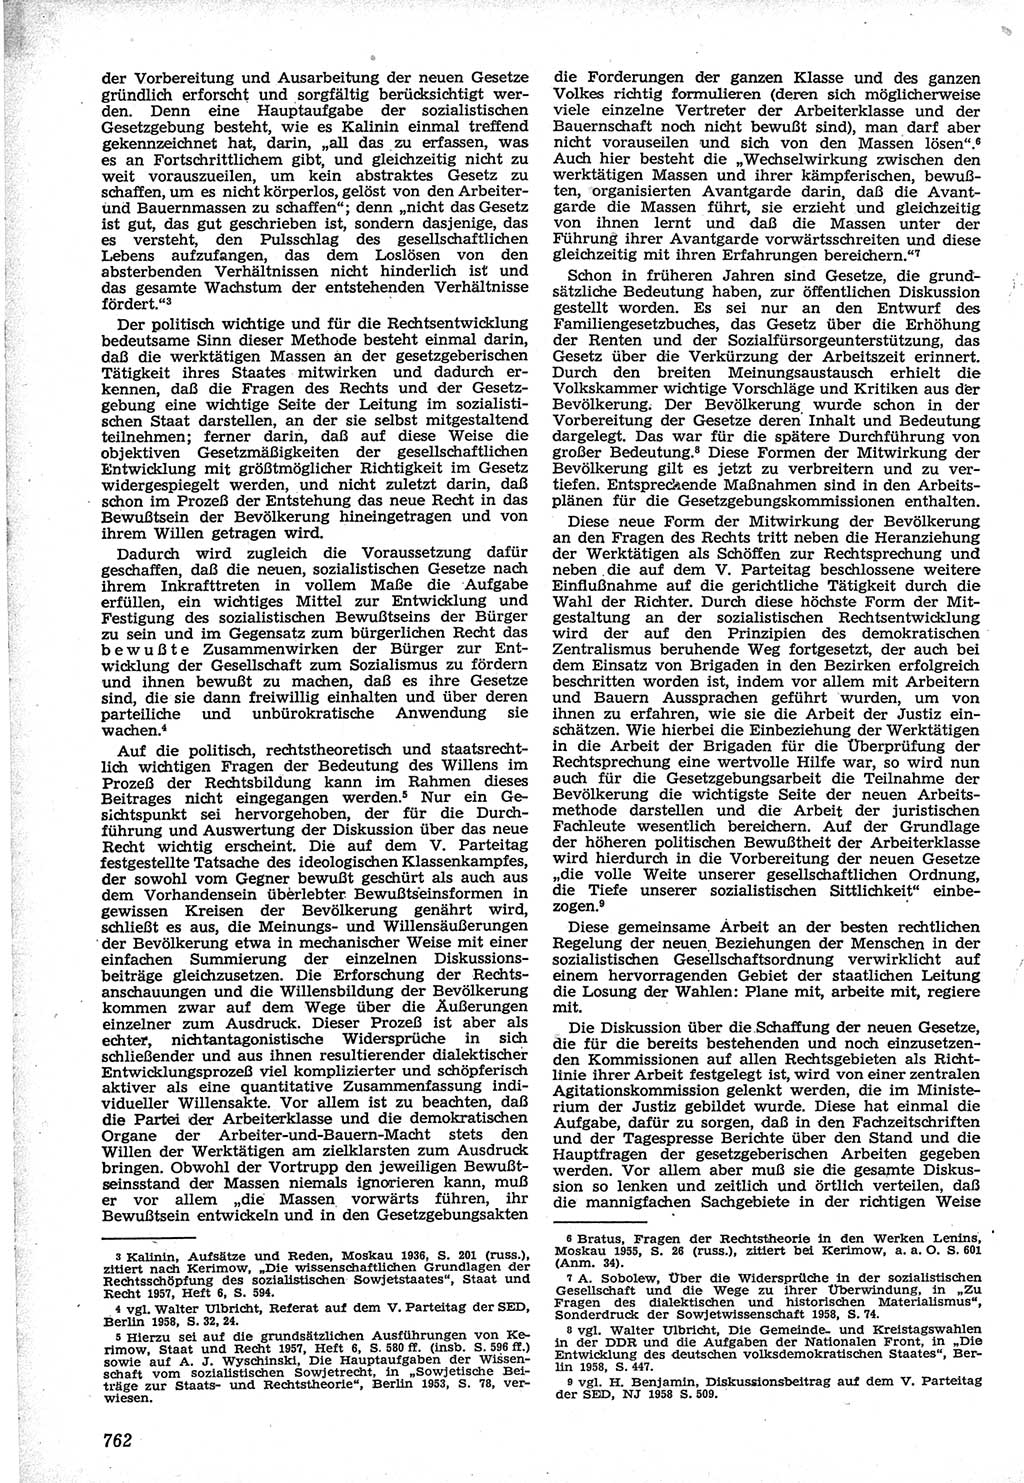 Neue Justiz (NJ), Zeitschrift für Recht und Rechtswissenschaft [Deutsche Demokratische Republik (DDR)], 12. Jahrgang 1958, Seite 762 (NJ DDR 1958, S. 762)